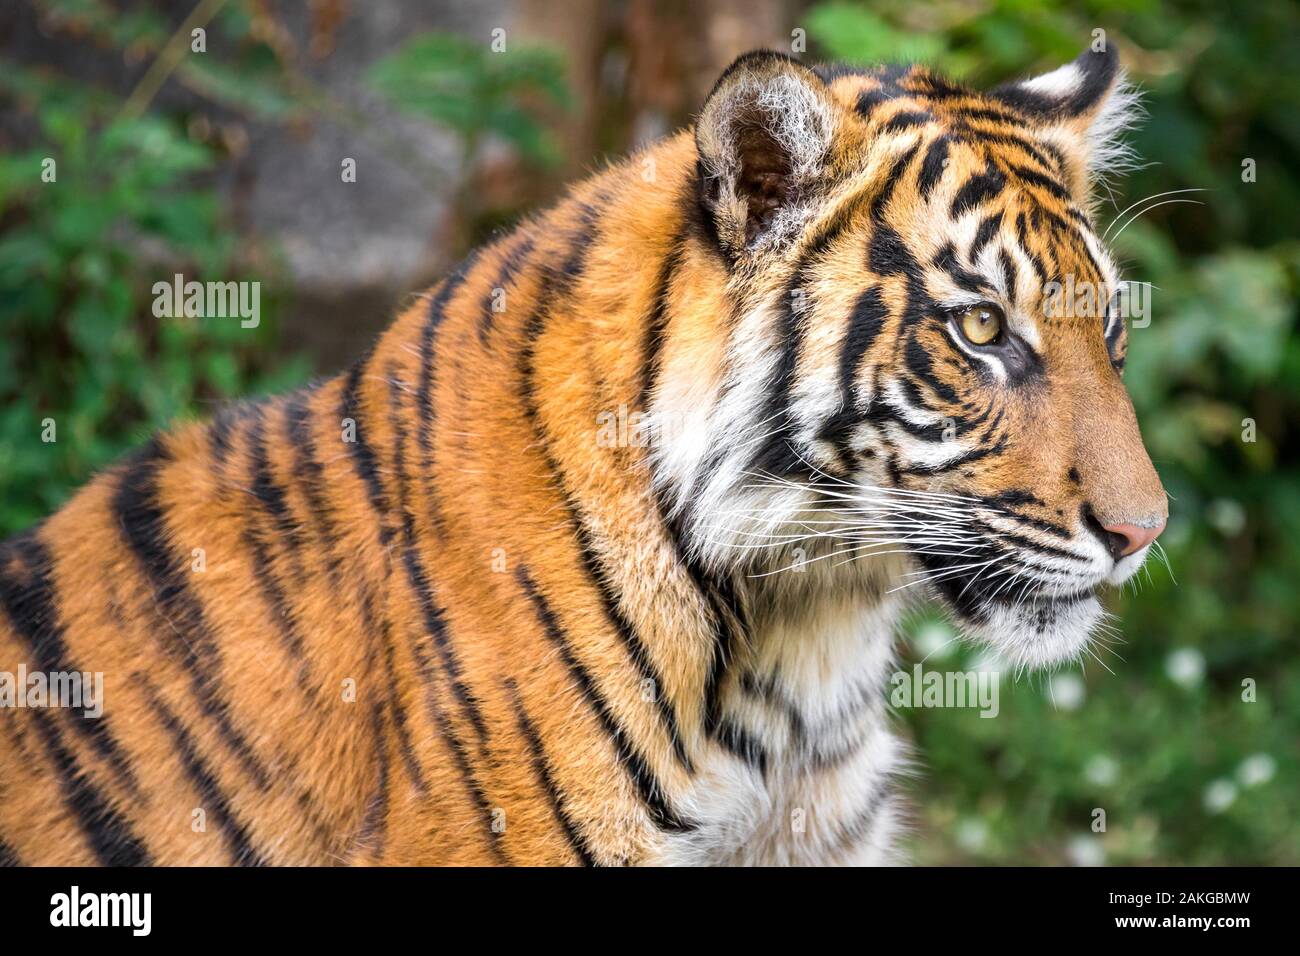 Primer plano de un gran tigre mirando hacia los lados, contra un fondo bokeh Foto de stock